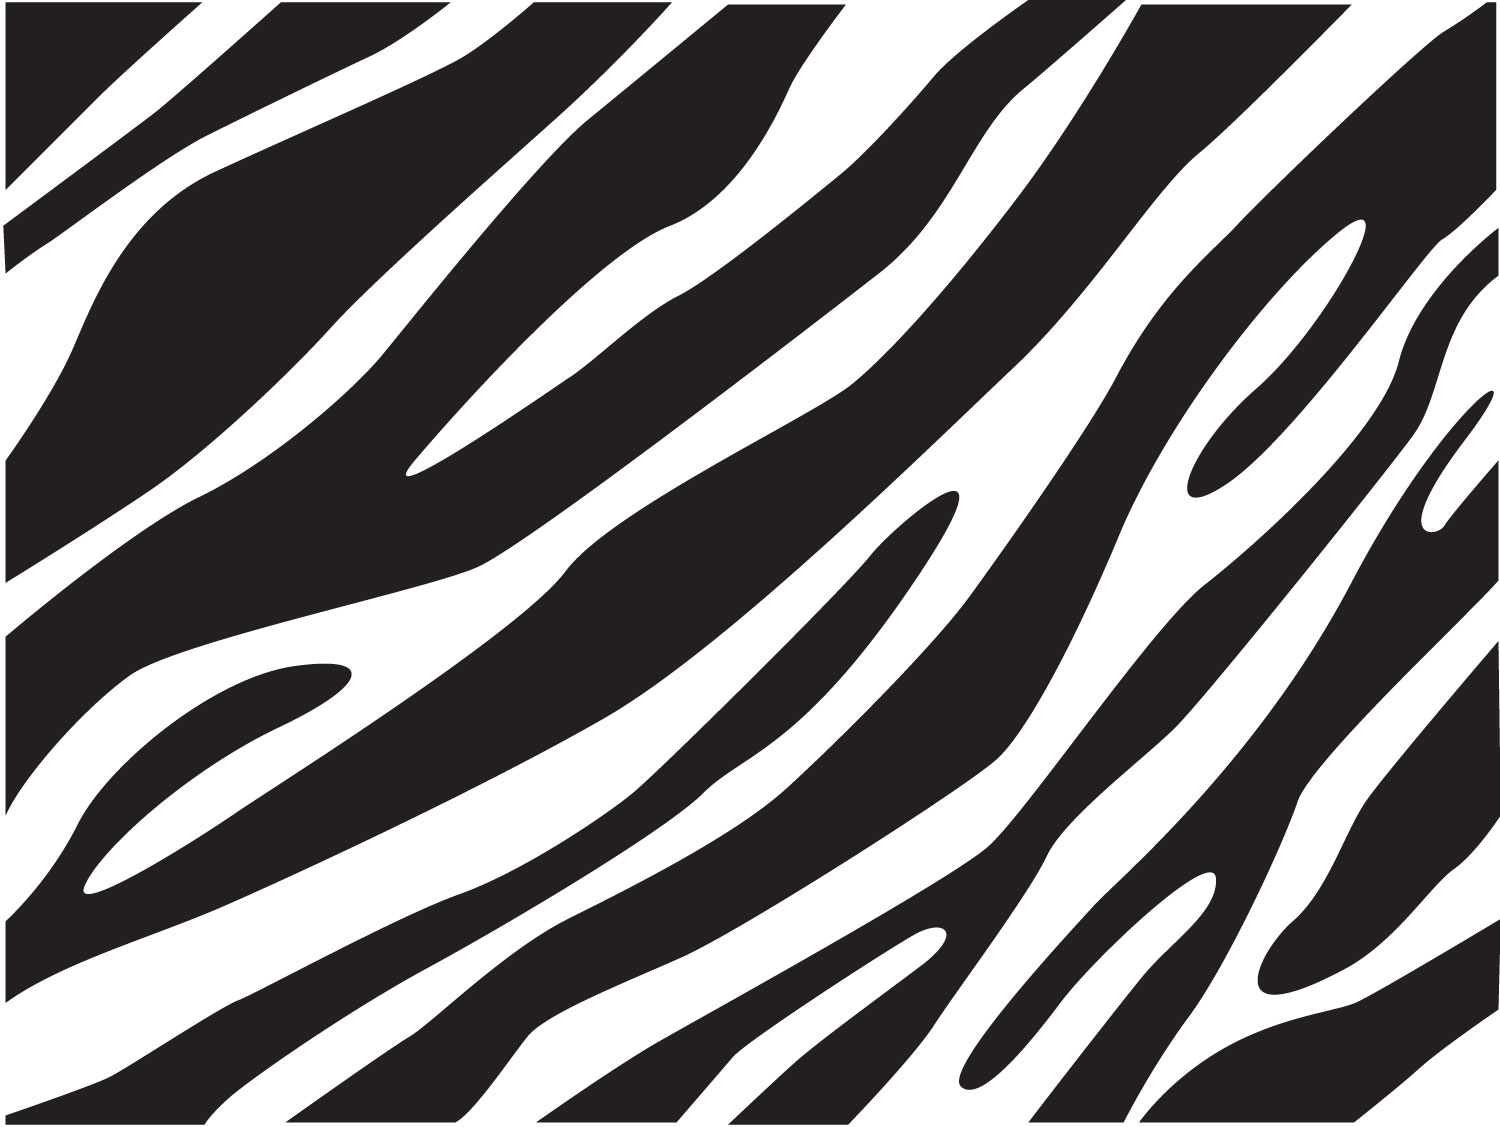 Zebra Print Puter Wallpaper Frenzia